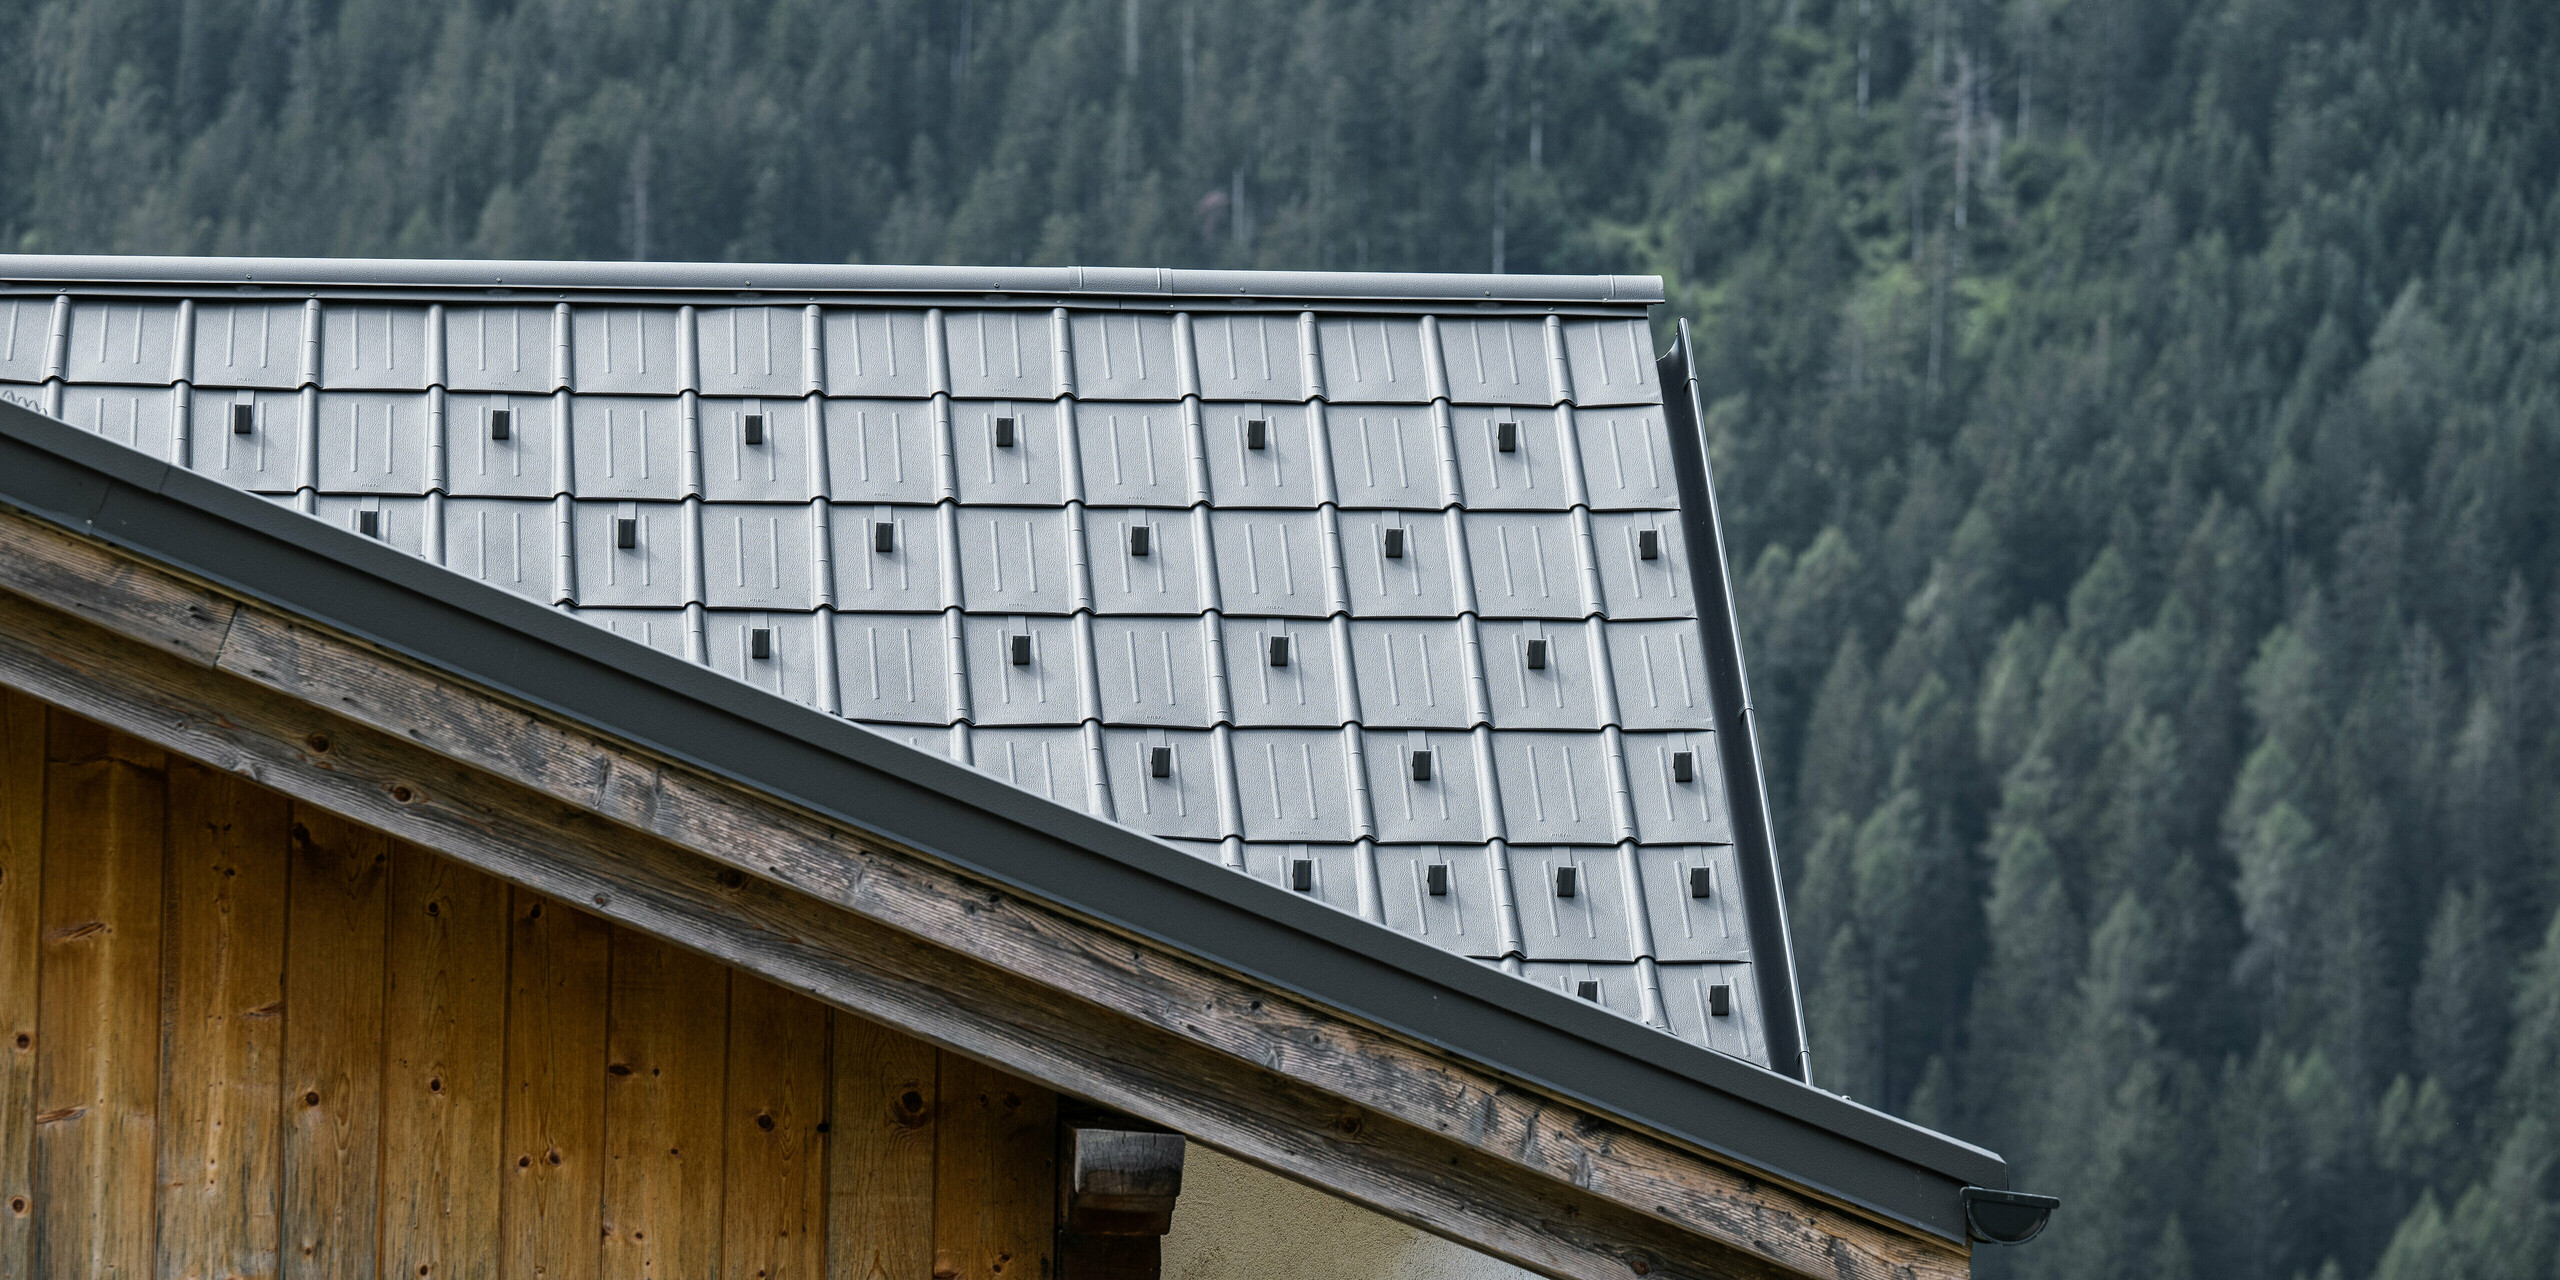 Detailní záběr hliníkové střechy se světle šedými falcovanými taškami od PREFA na horské chatě v Auronzo di Cadore v Itálii, obklopené hustými lesy. Precizní montáž a jednoduchý design střešních panelů zdůrazňuje venkovskou architekturu a zároveň poskytuje moderní ochranu a estetiku v souladu s přírodním horským prostředím.